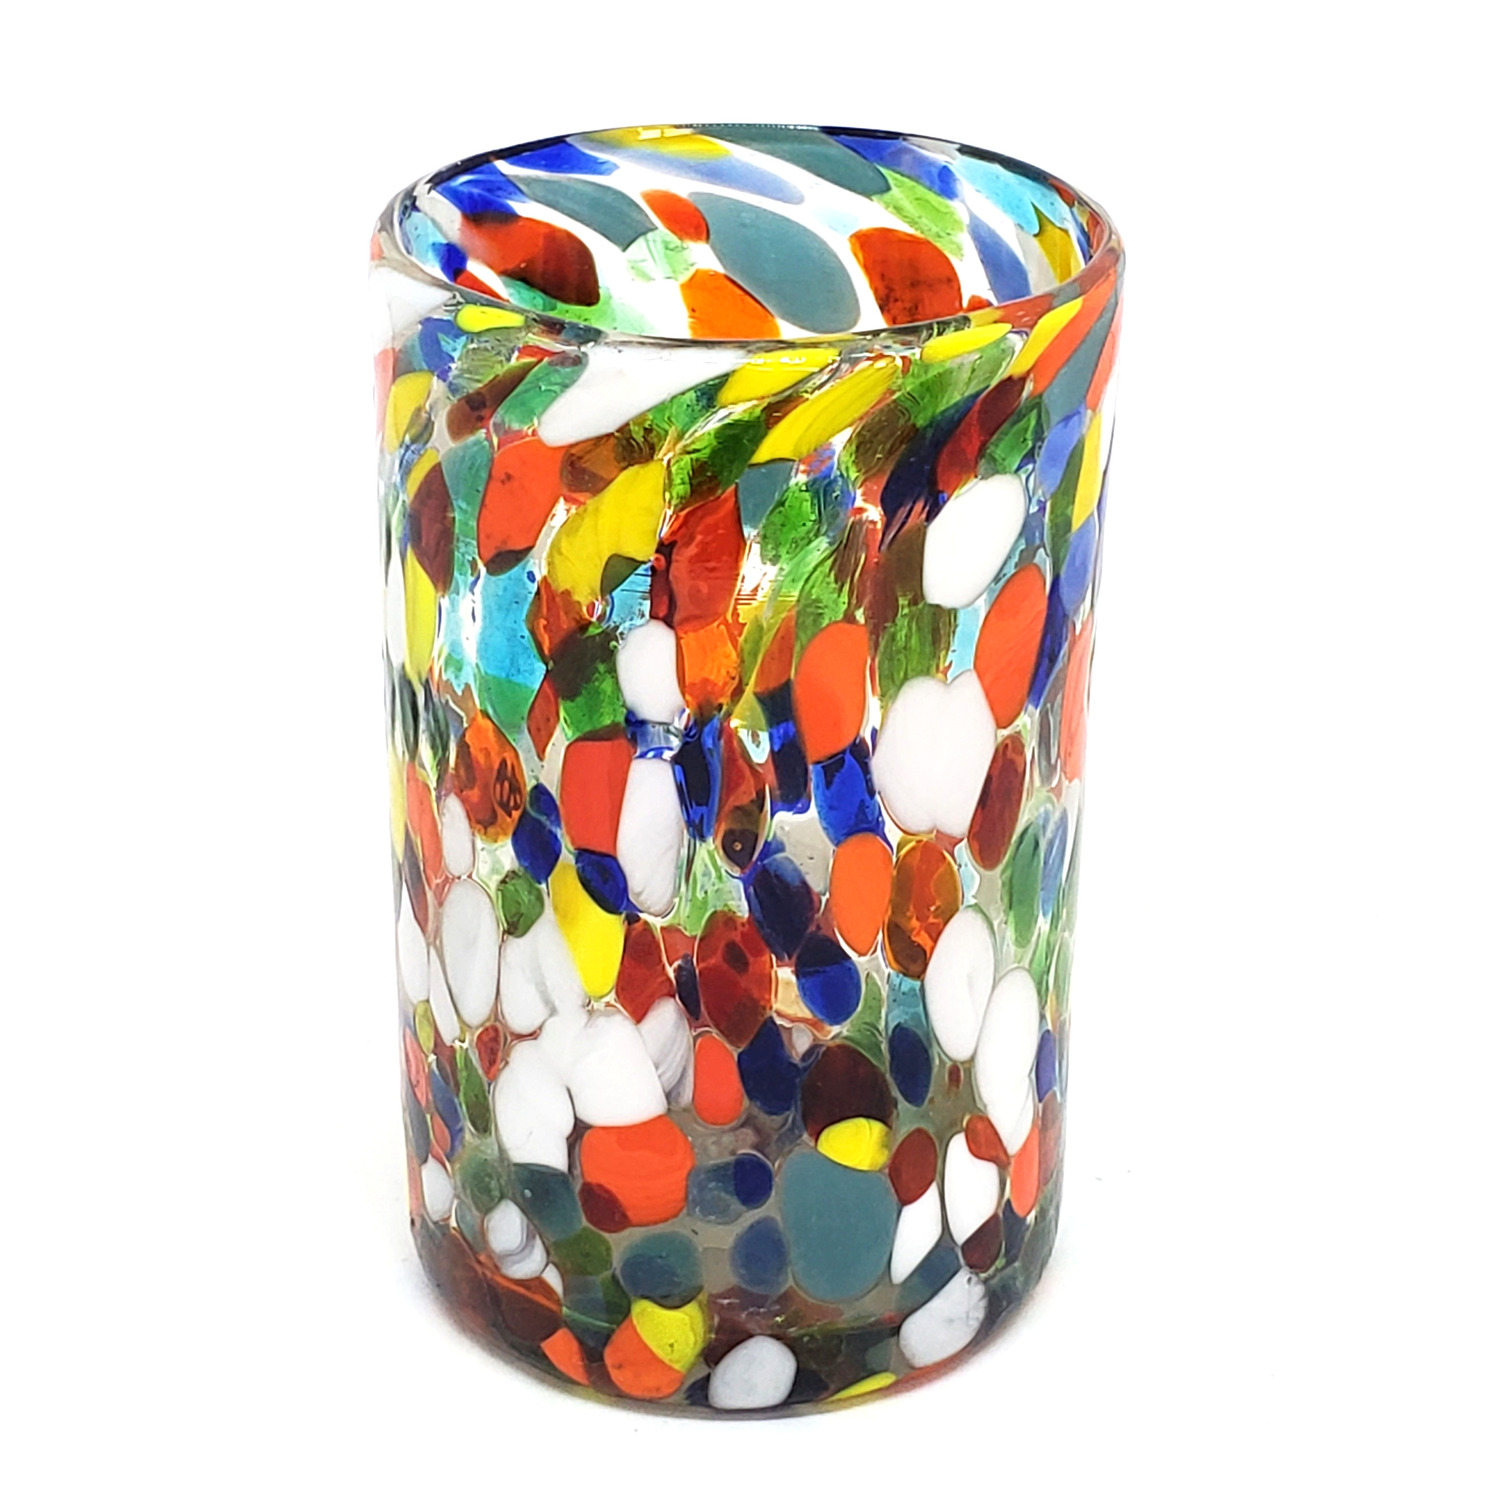 Novedades / Juego de 6 vasos grandes 'Confeti Carnaval' / Deje entrar a la primavera en su casa con �ste colorido juego de vasos. El decorado con vidrio multicolor los hace resaltar en cualquier lugar.